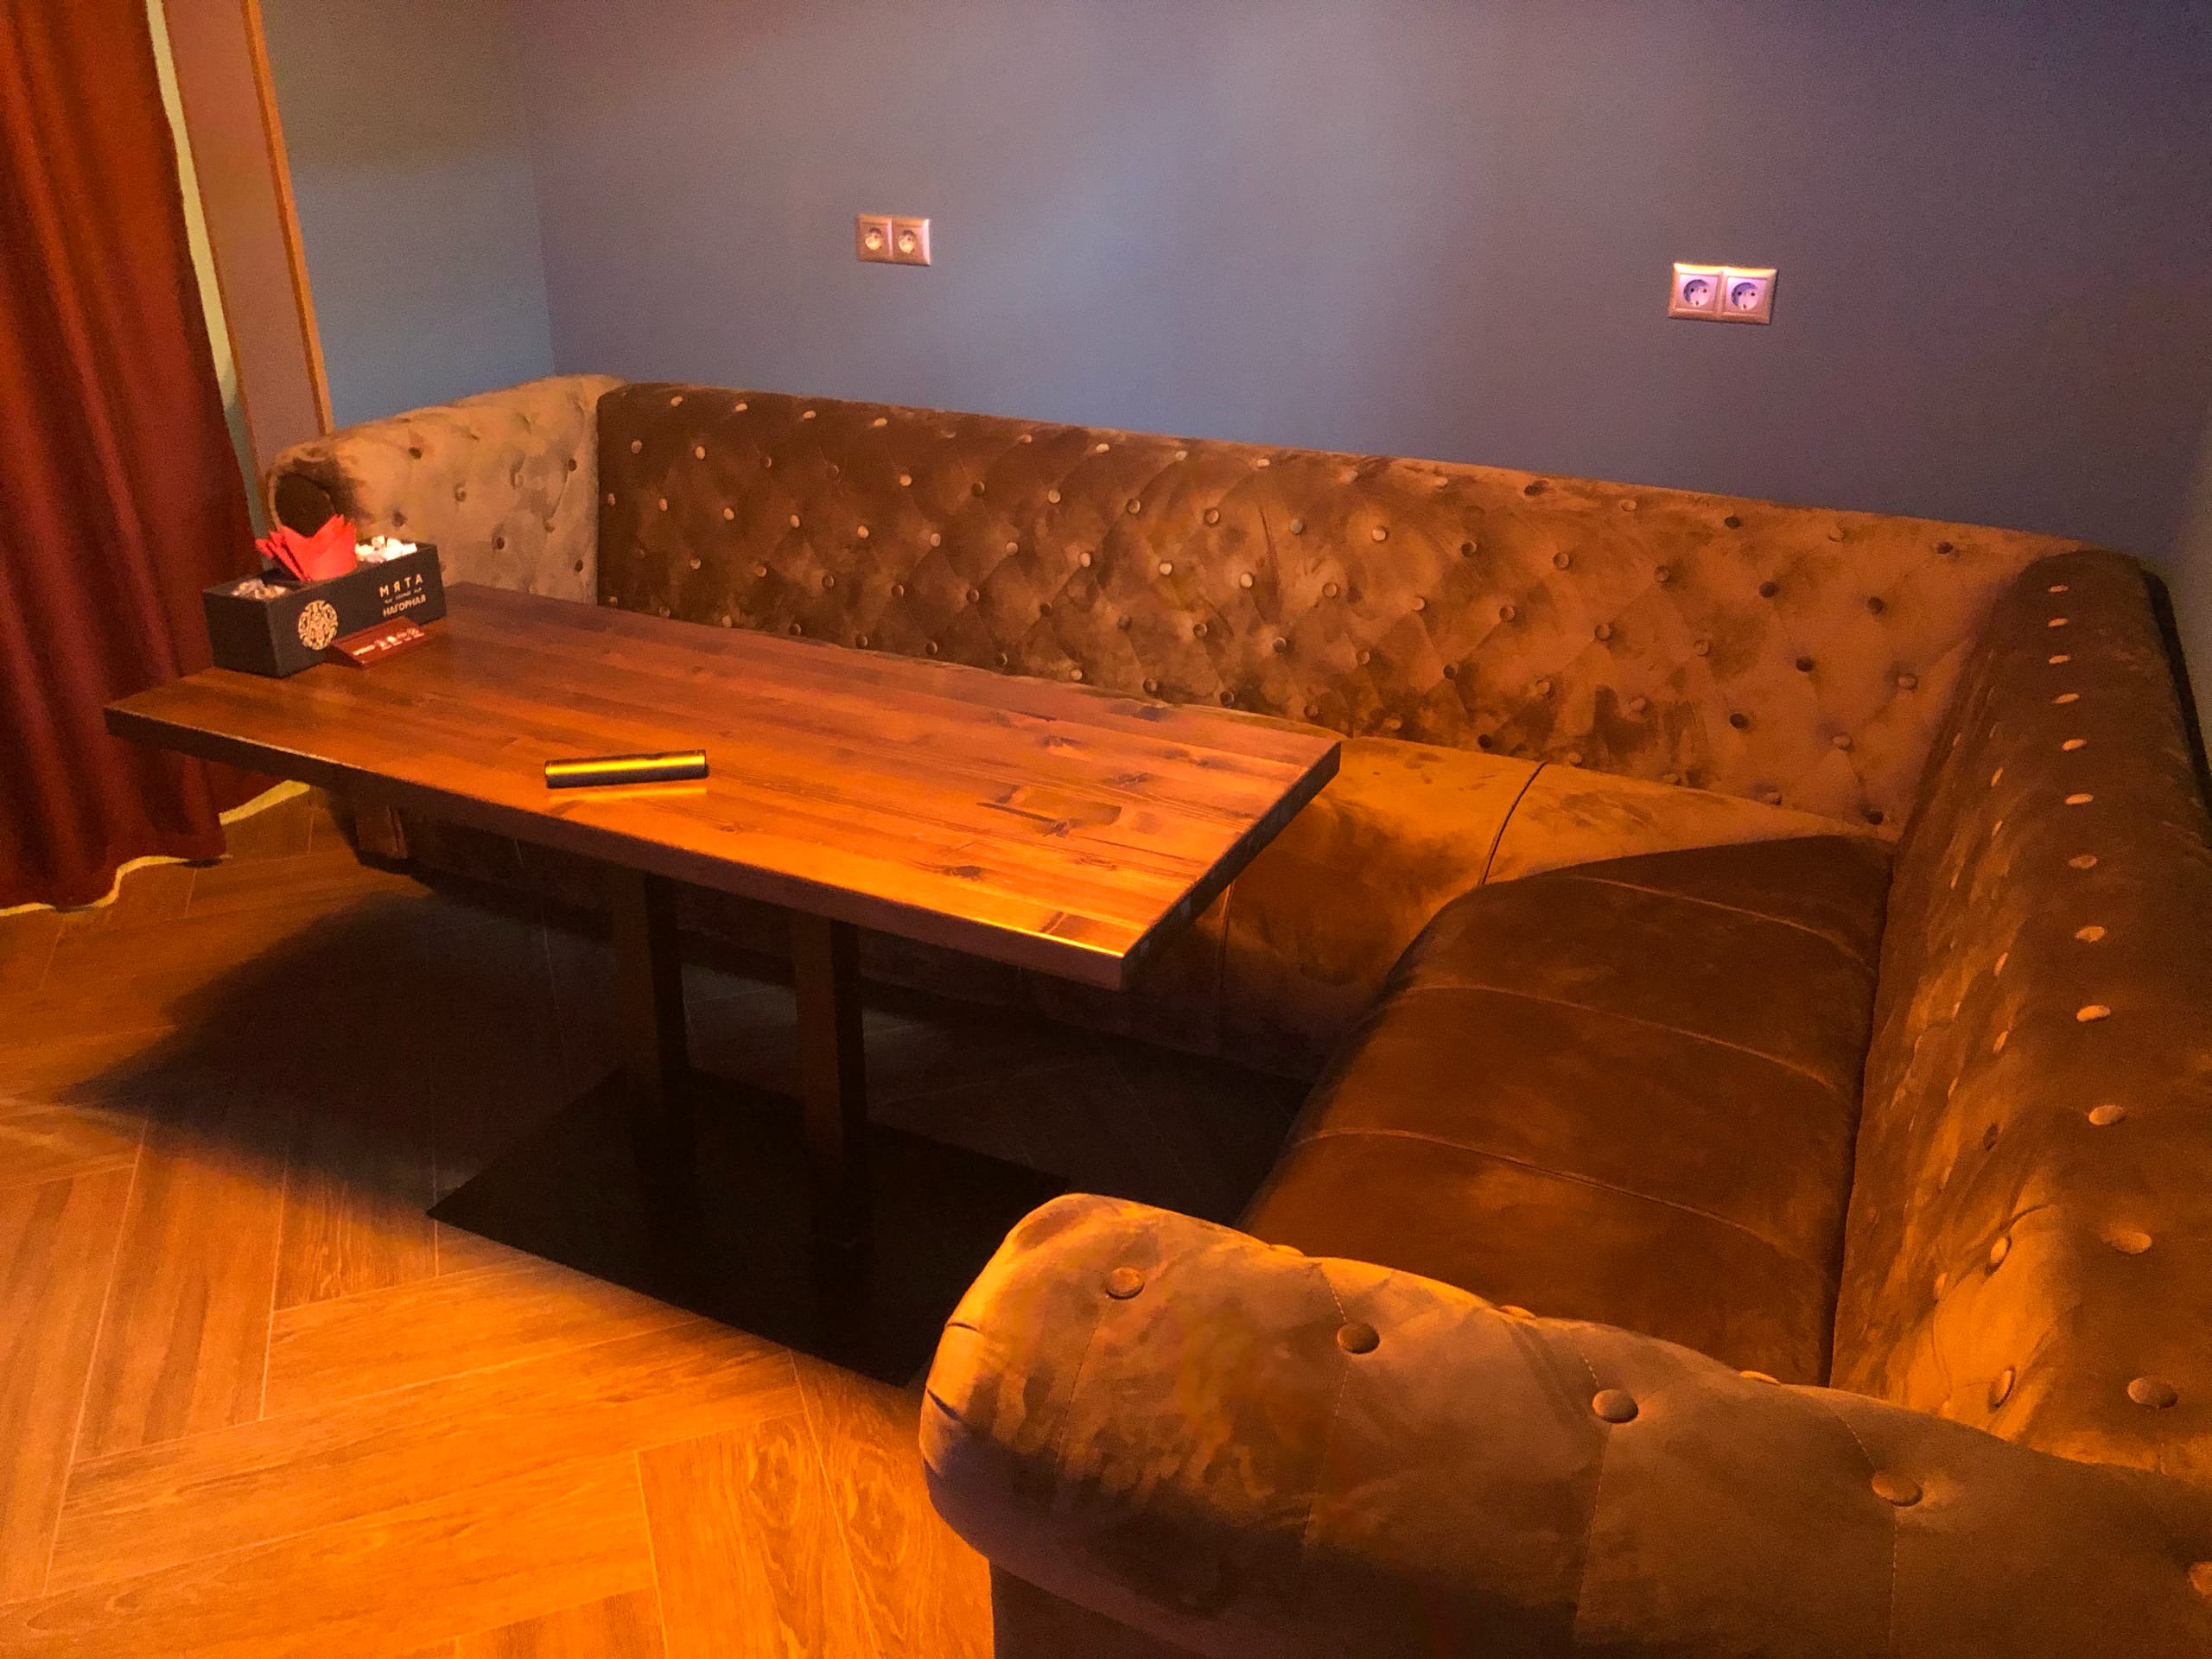 Мята Lounge Нагорная, лаундж-бар, Варшавское шоссе, 72 к2, цокольный этаж